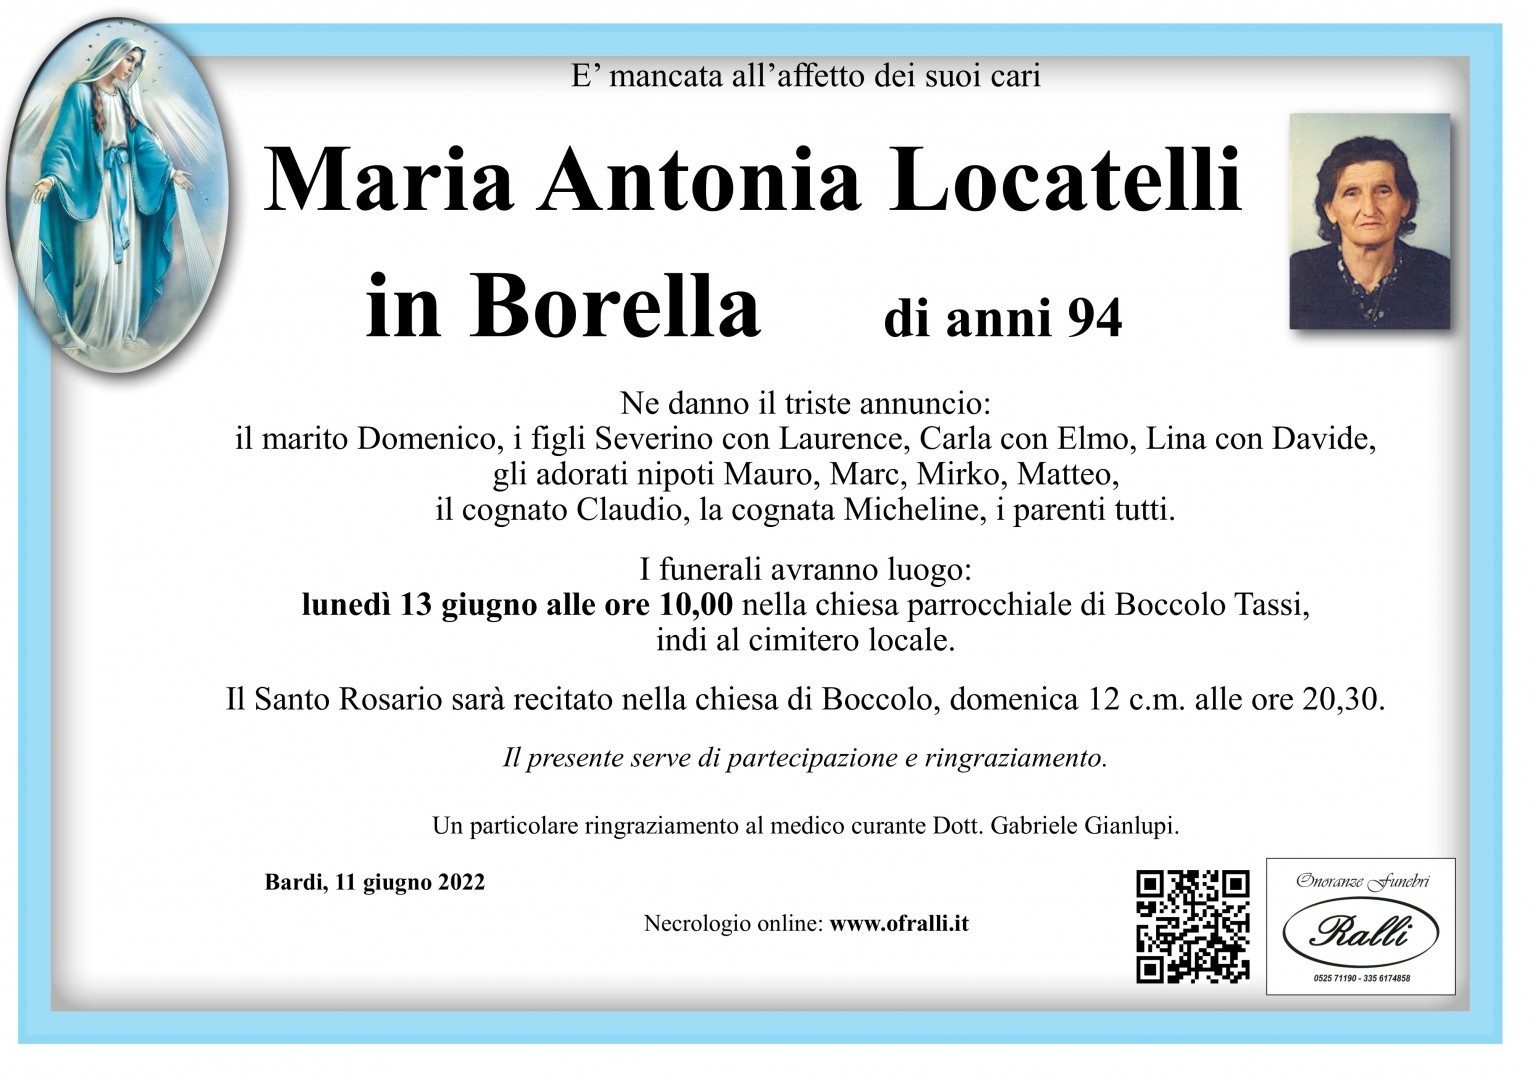 Maria Antonia Locatelli